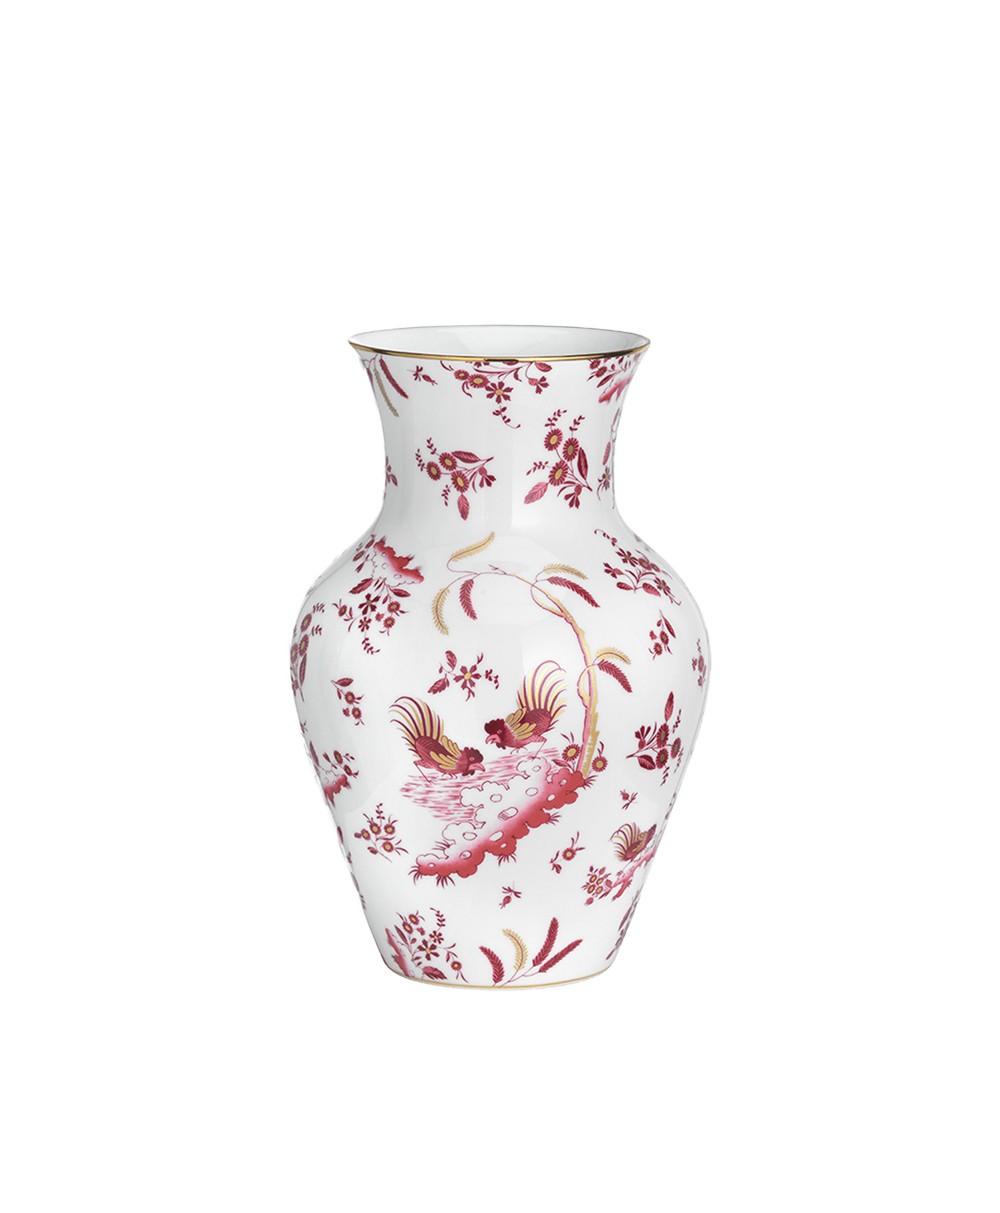 Produktbild "Oro Di Doccia Vase S" von Ginori 1735 im RAUM Concept store